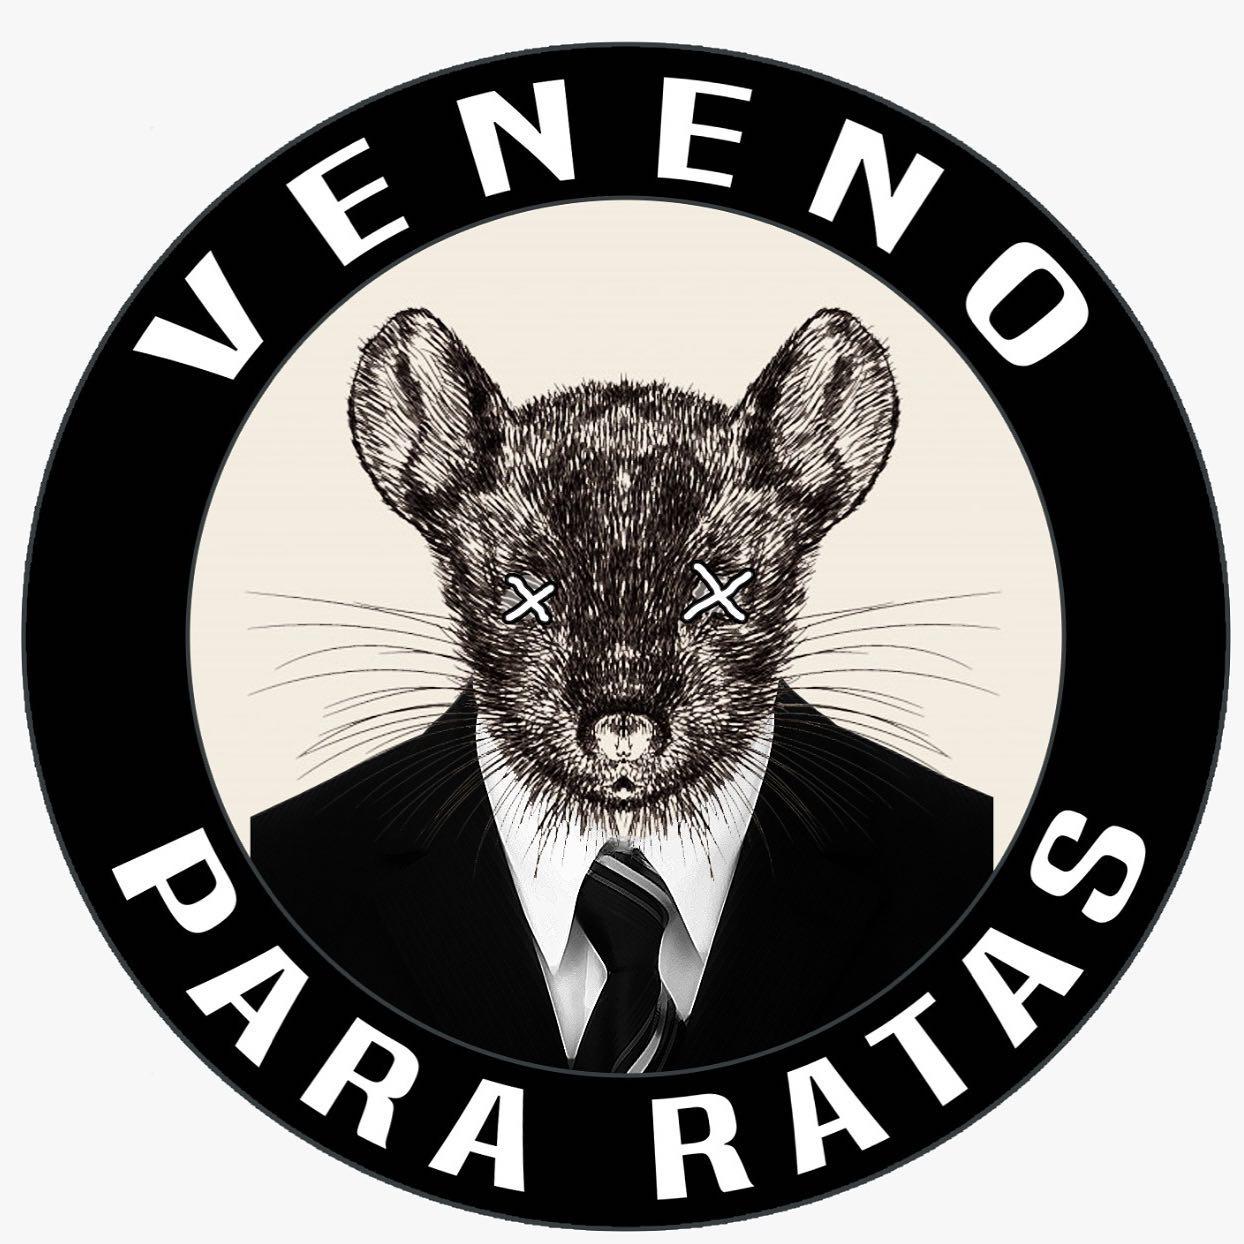 Veneno Para Ratas - Songs, Events and Music Stats